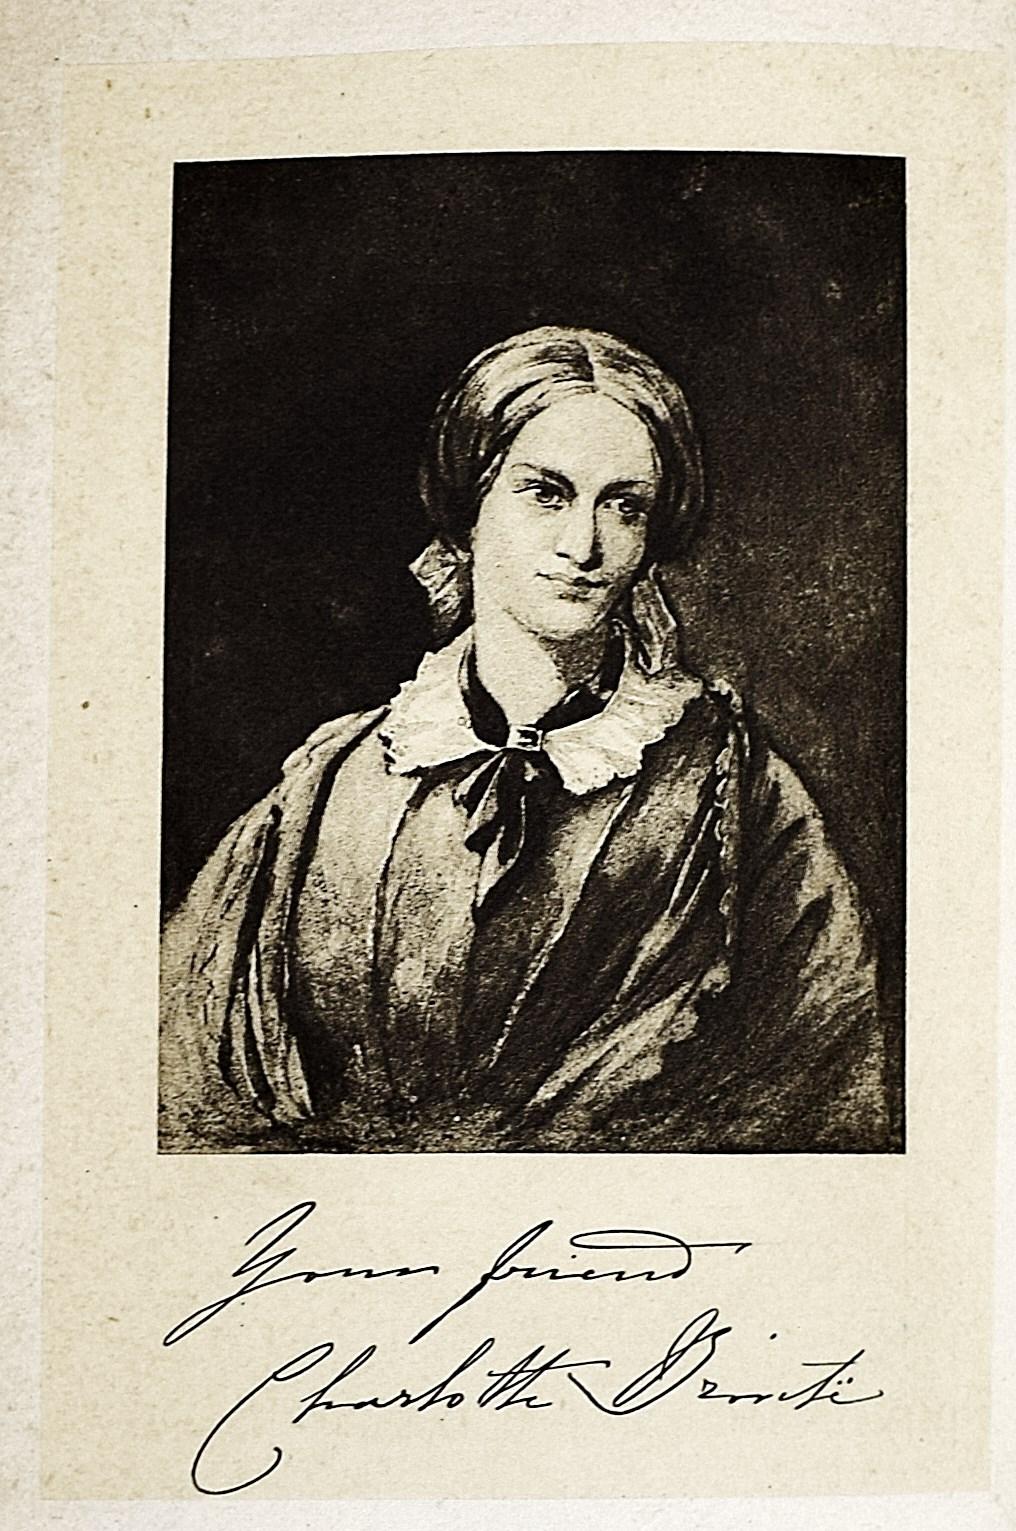 Charlotte Brontë Writing Artwork Art Print for Sale by EmilyInGondal